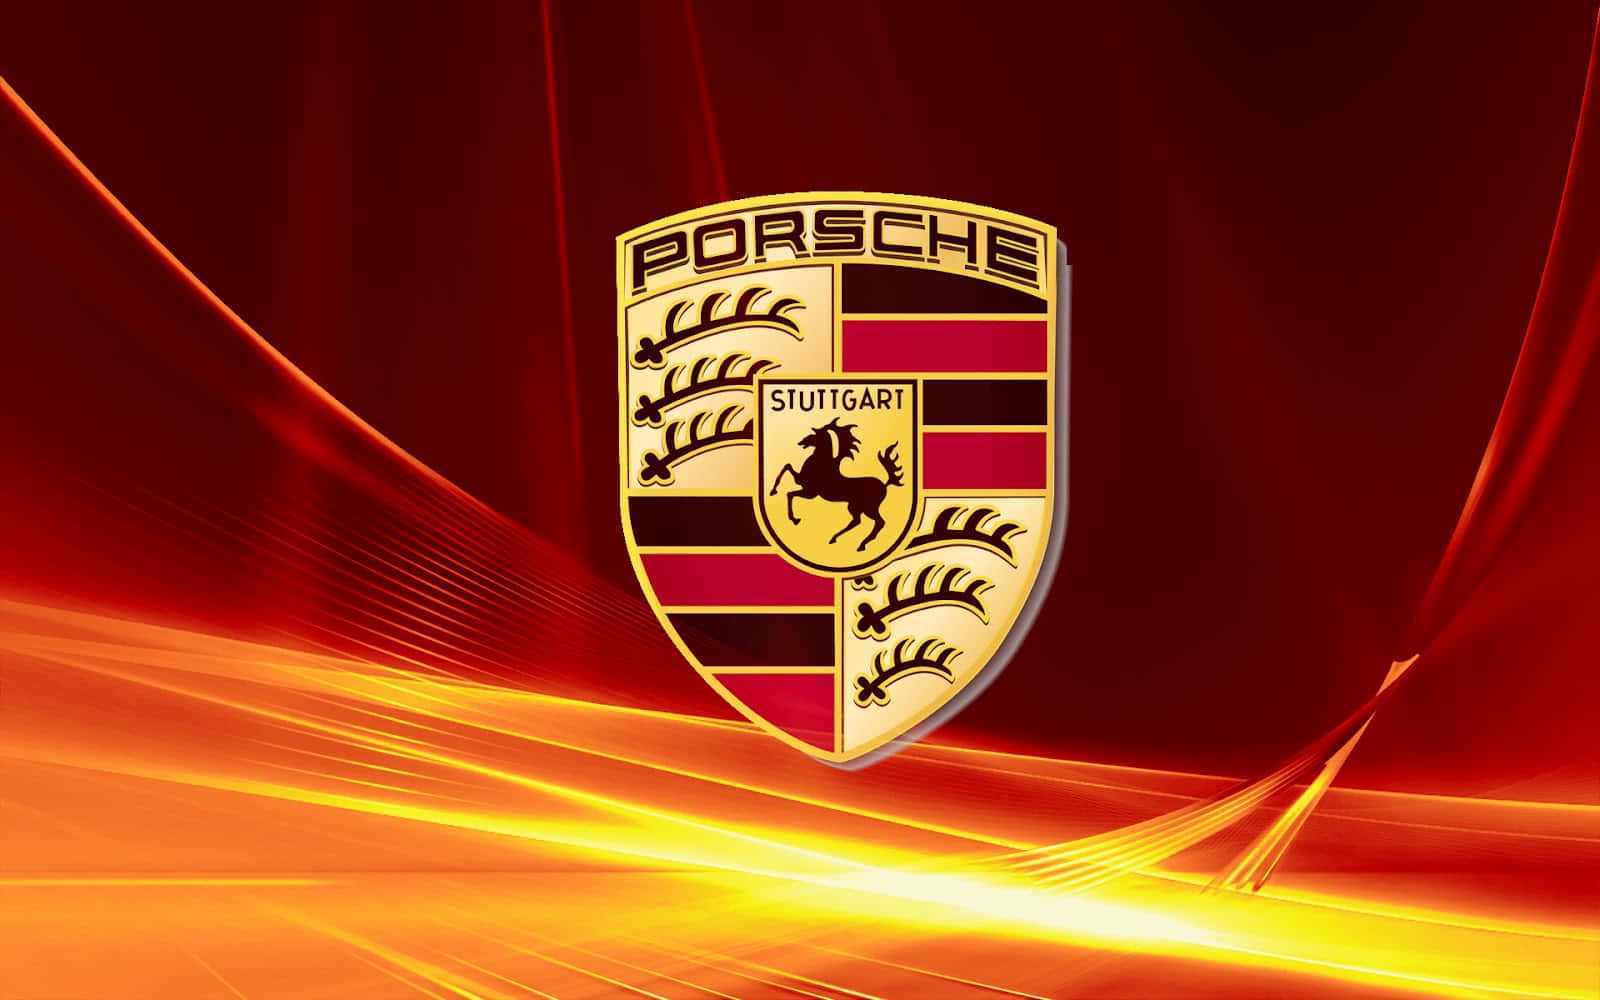 Porsche1600 X 1000 Bakgrund